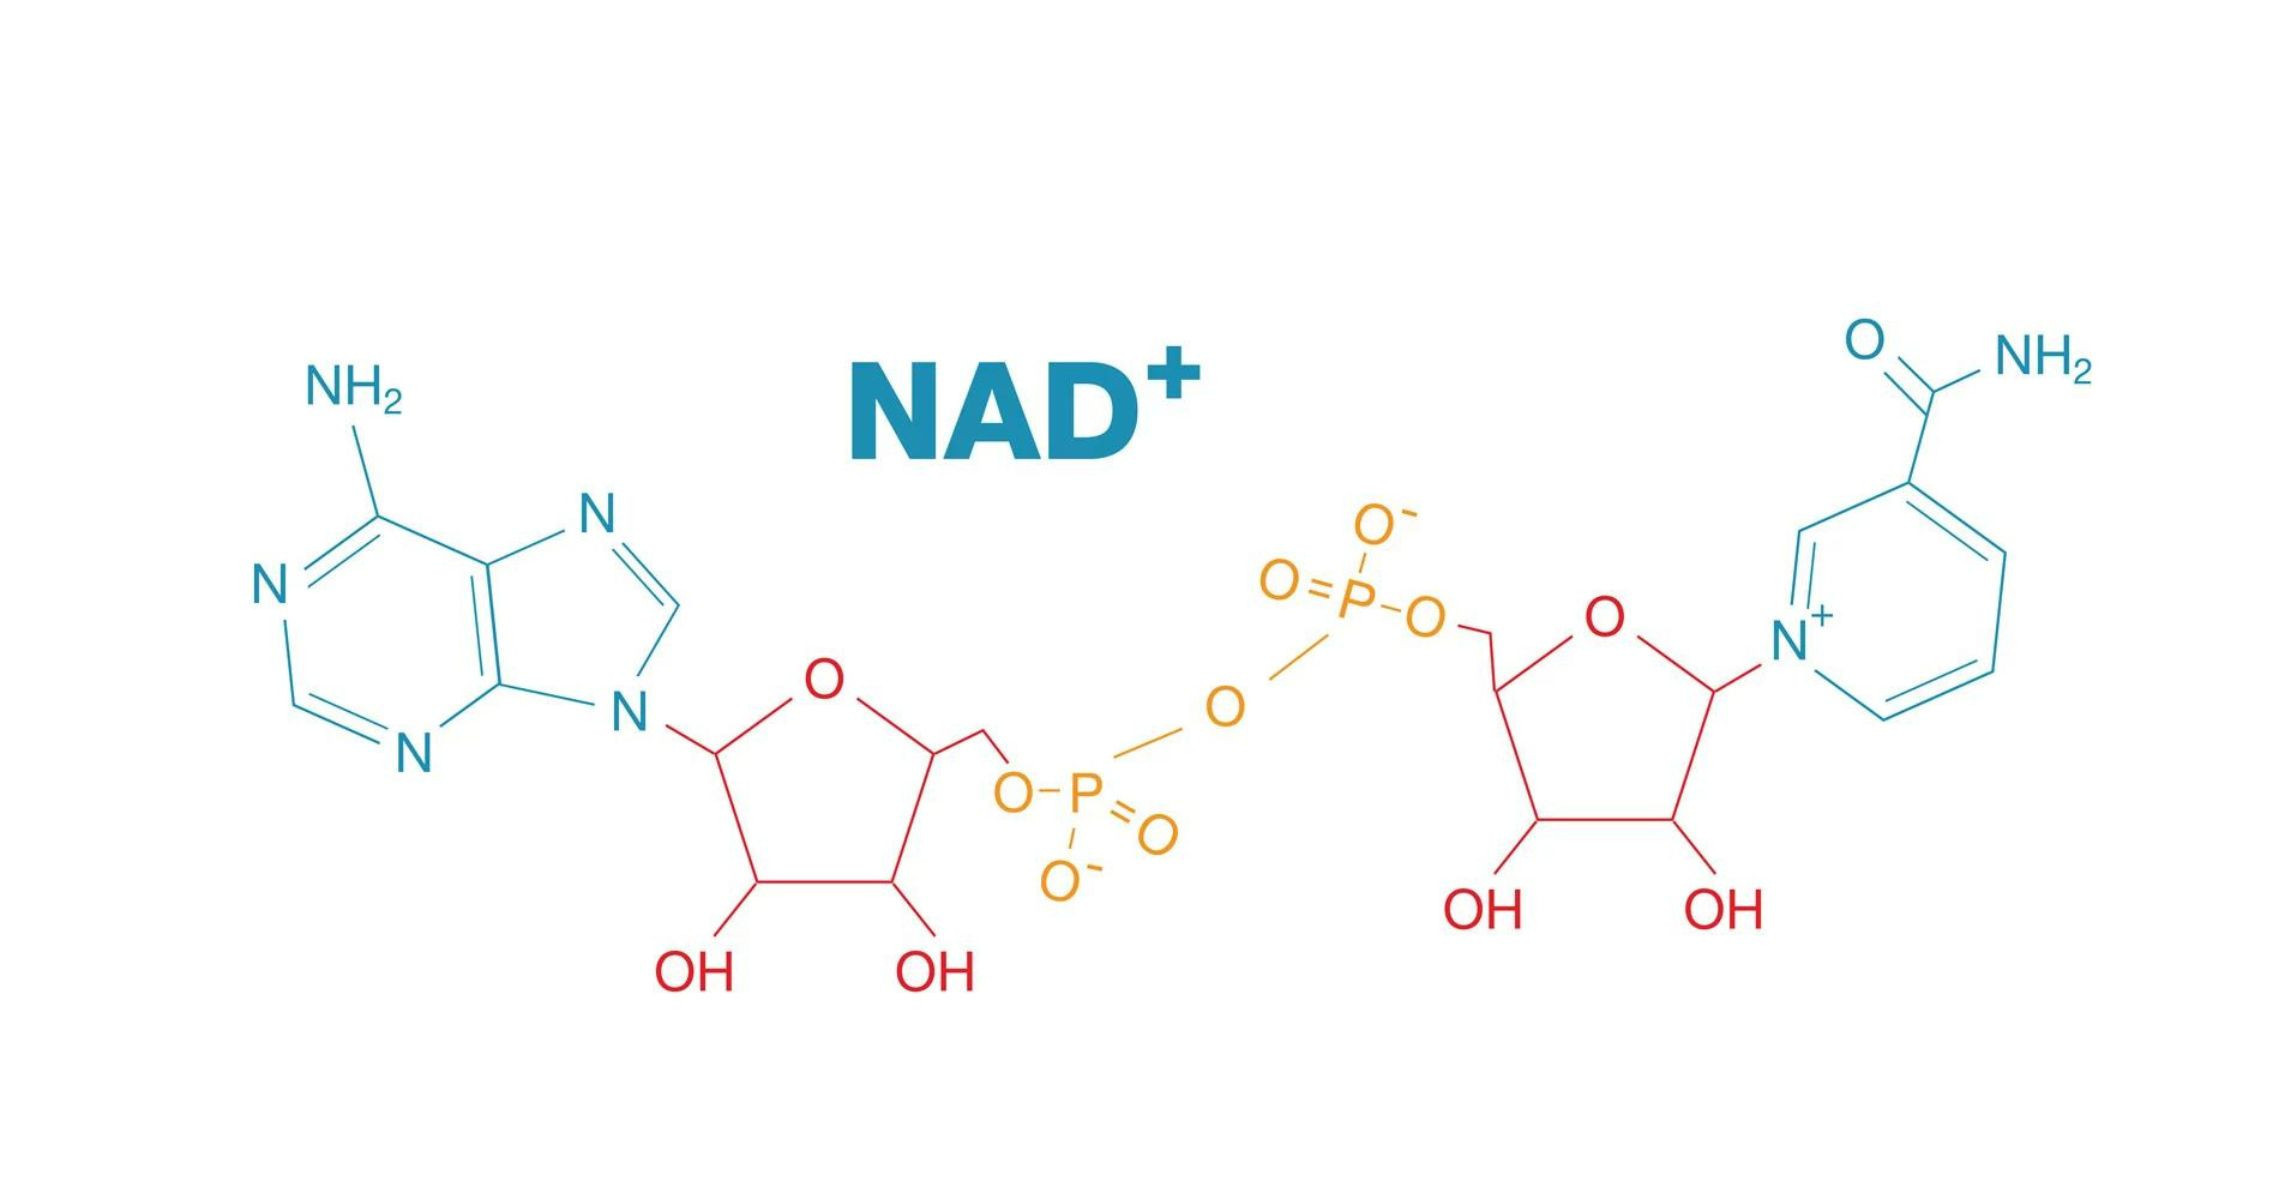 Truyền năng lượng nad+ và NAD với liệu trình như thế nào sẽ tối ưu?